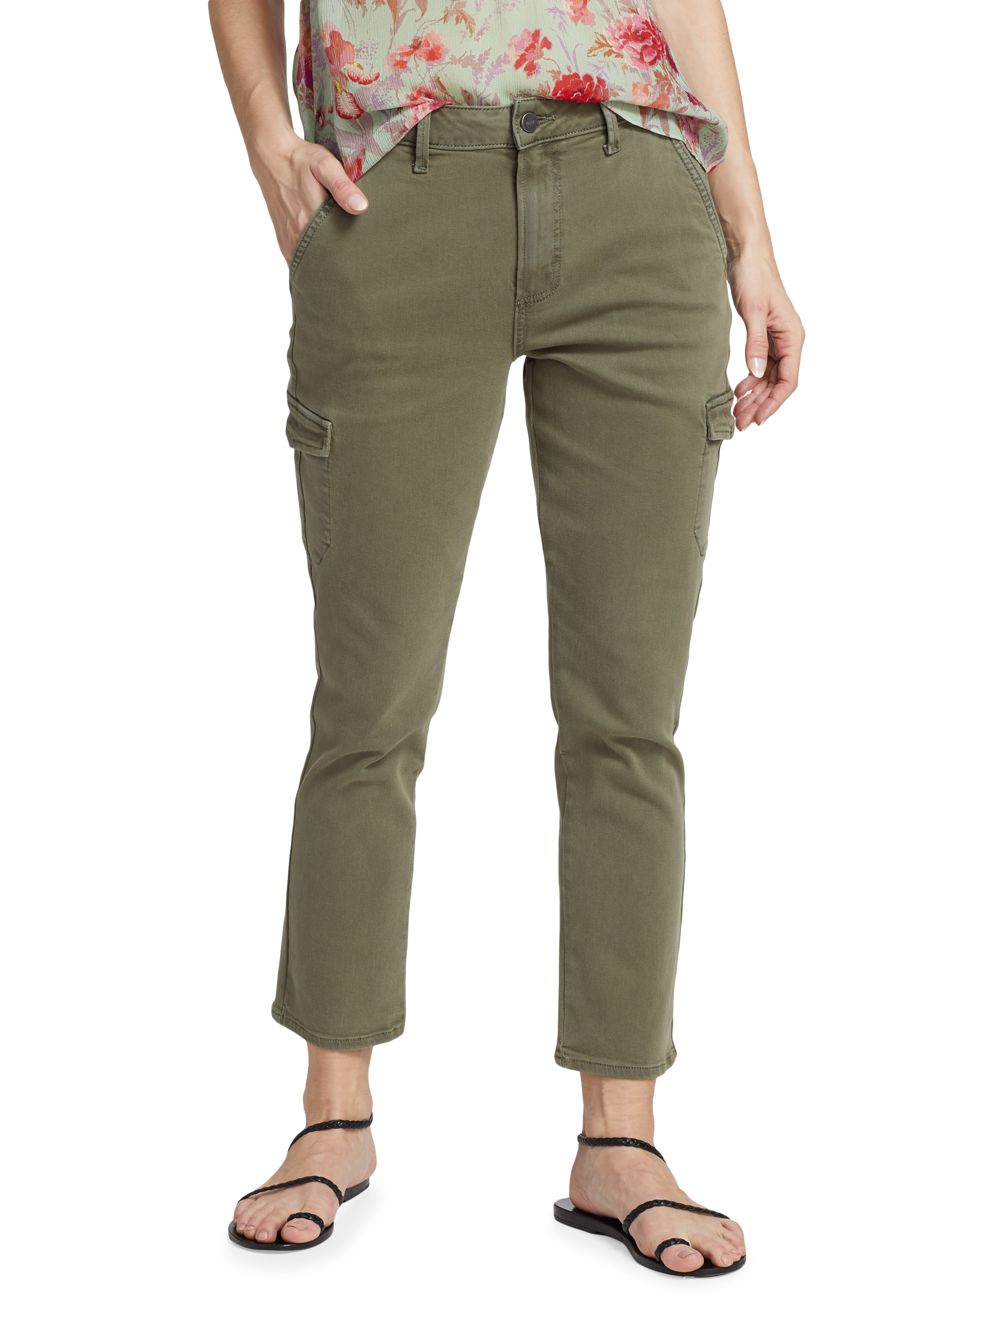 Узкие прямые укороченные брюки Jolie Twill Paige, зеленый – заказать из-заграницы с доставкой в «CDEK.Shopping»